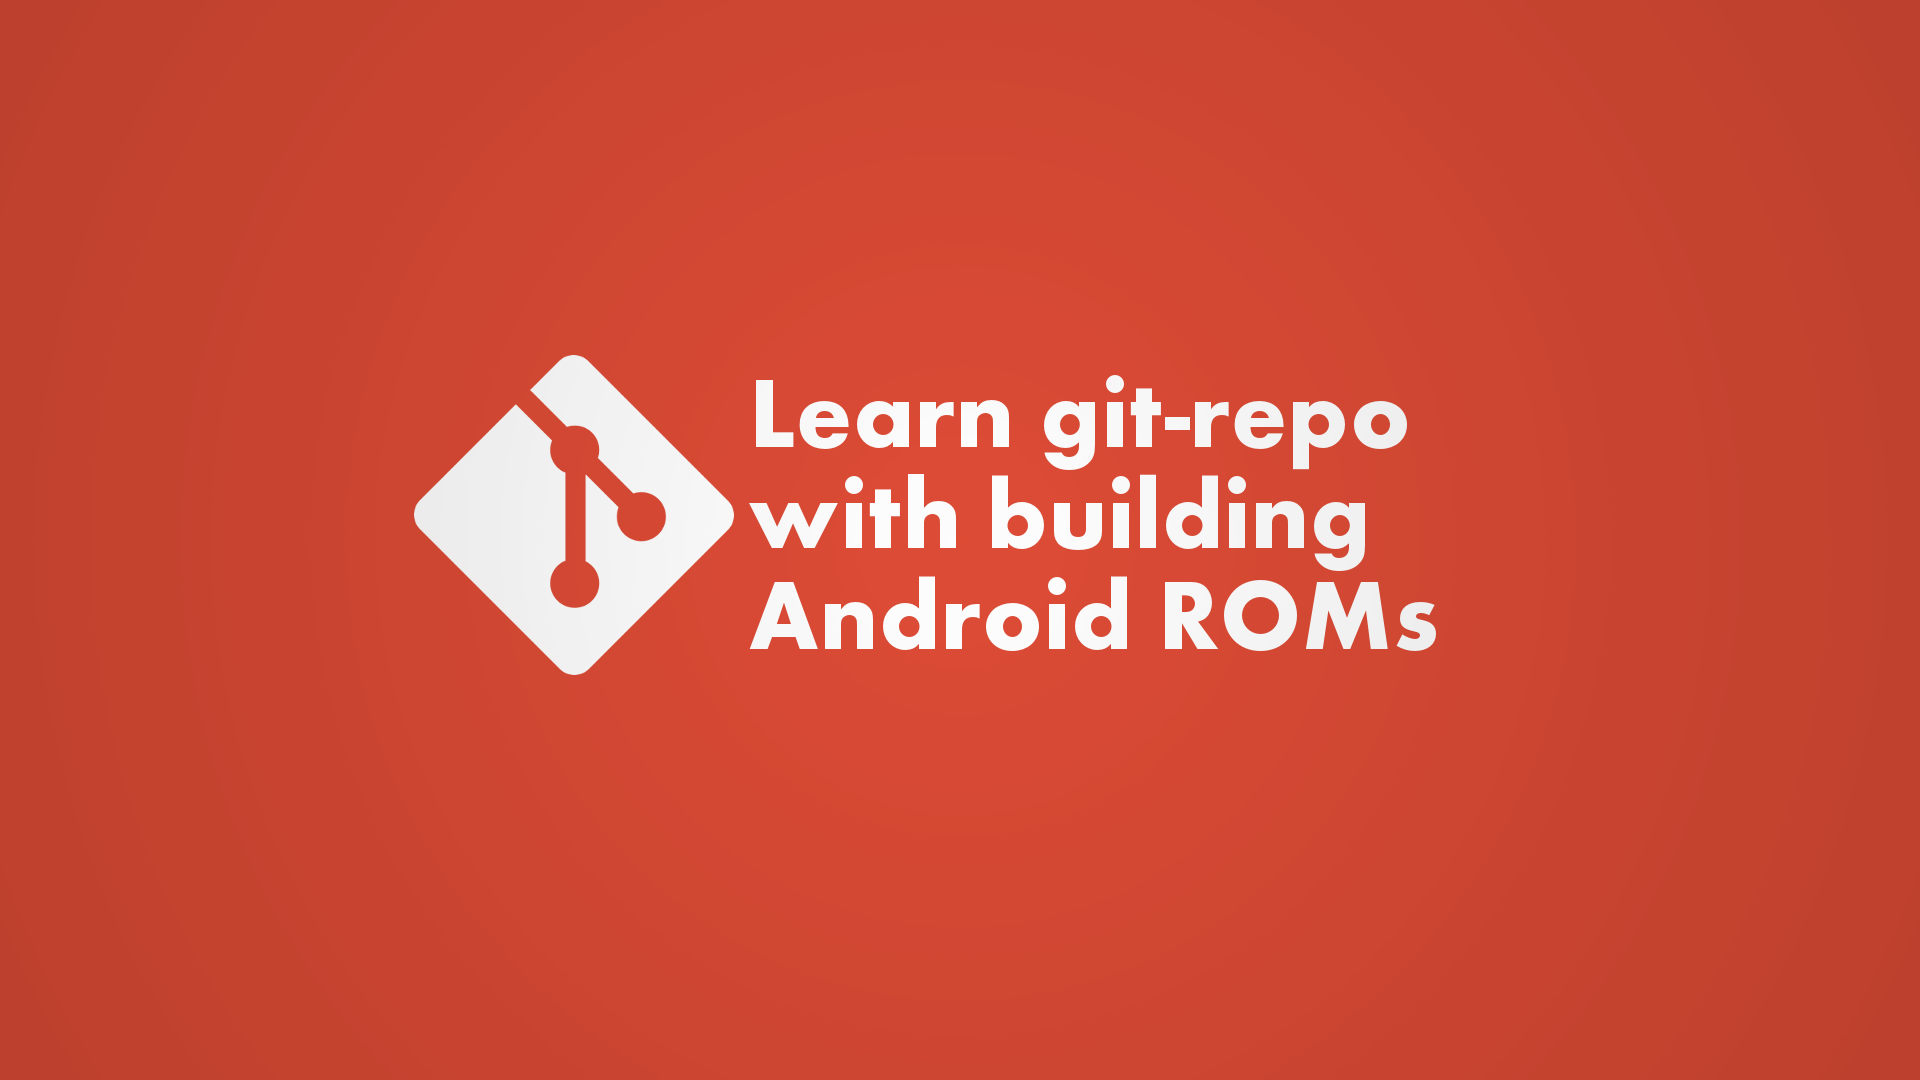 Android ビルドで学ぶ git-repo 入門